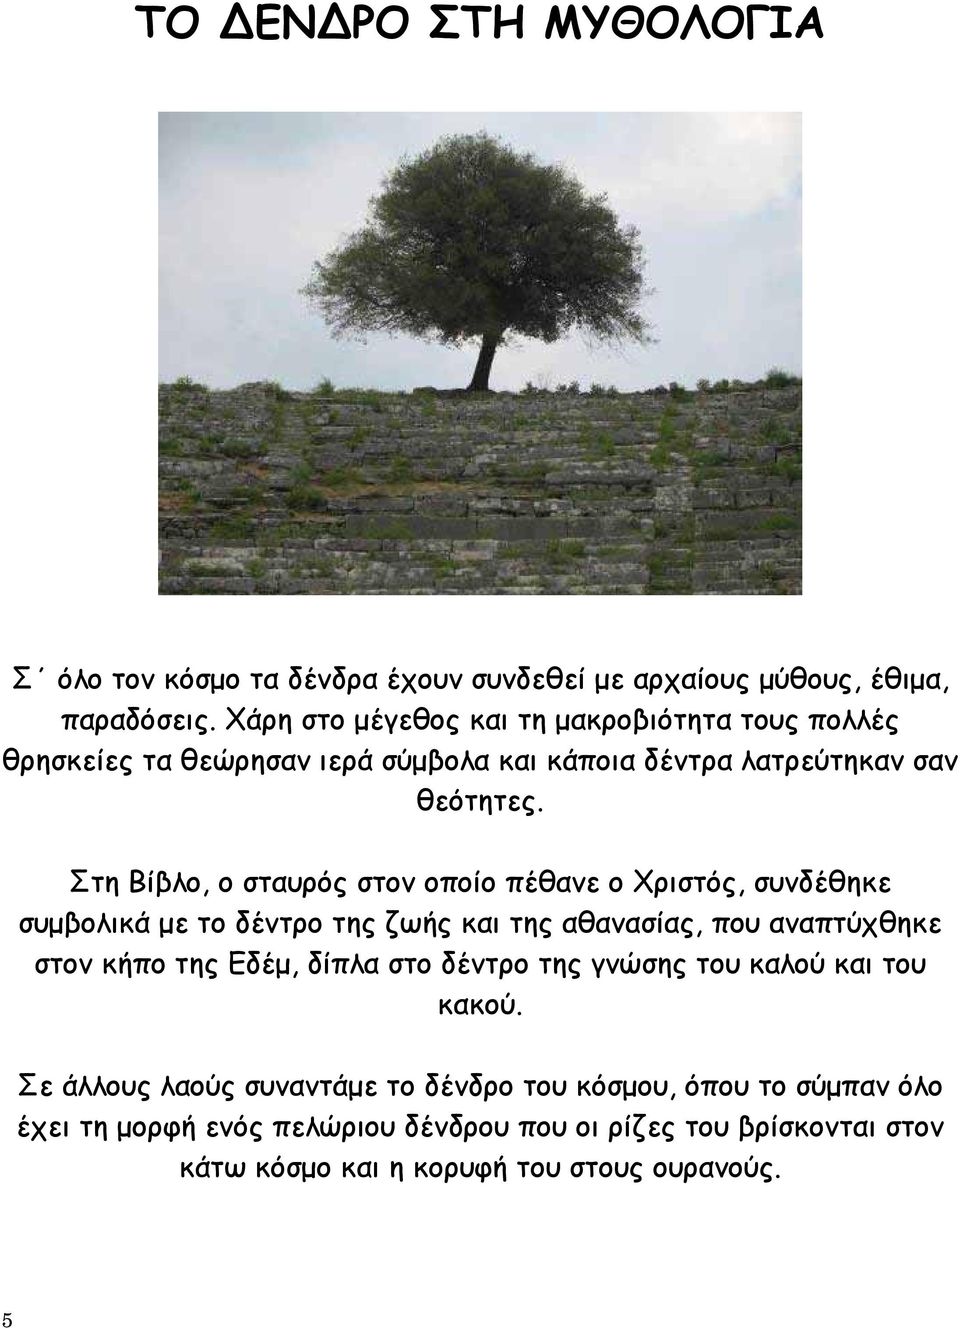 Στη Βίβλο, ο σταυρός στον οποίο πέθανε ο Χριστός, συνδέθηκε συμβολικά με το δέντρο της ζωής και της αθανασίας, που αναπτύχθηκε στον κήπο της Εδέμ, δίπλα